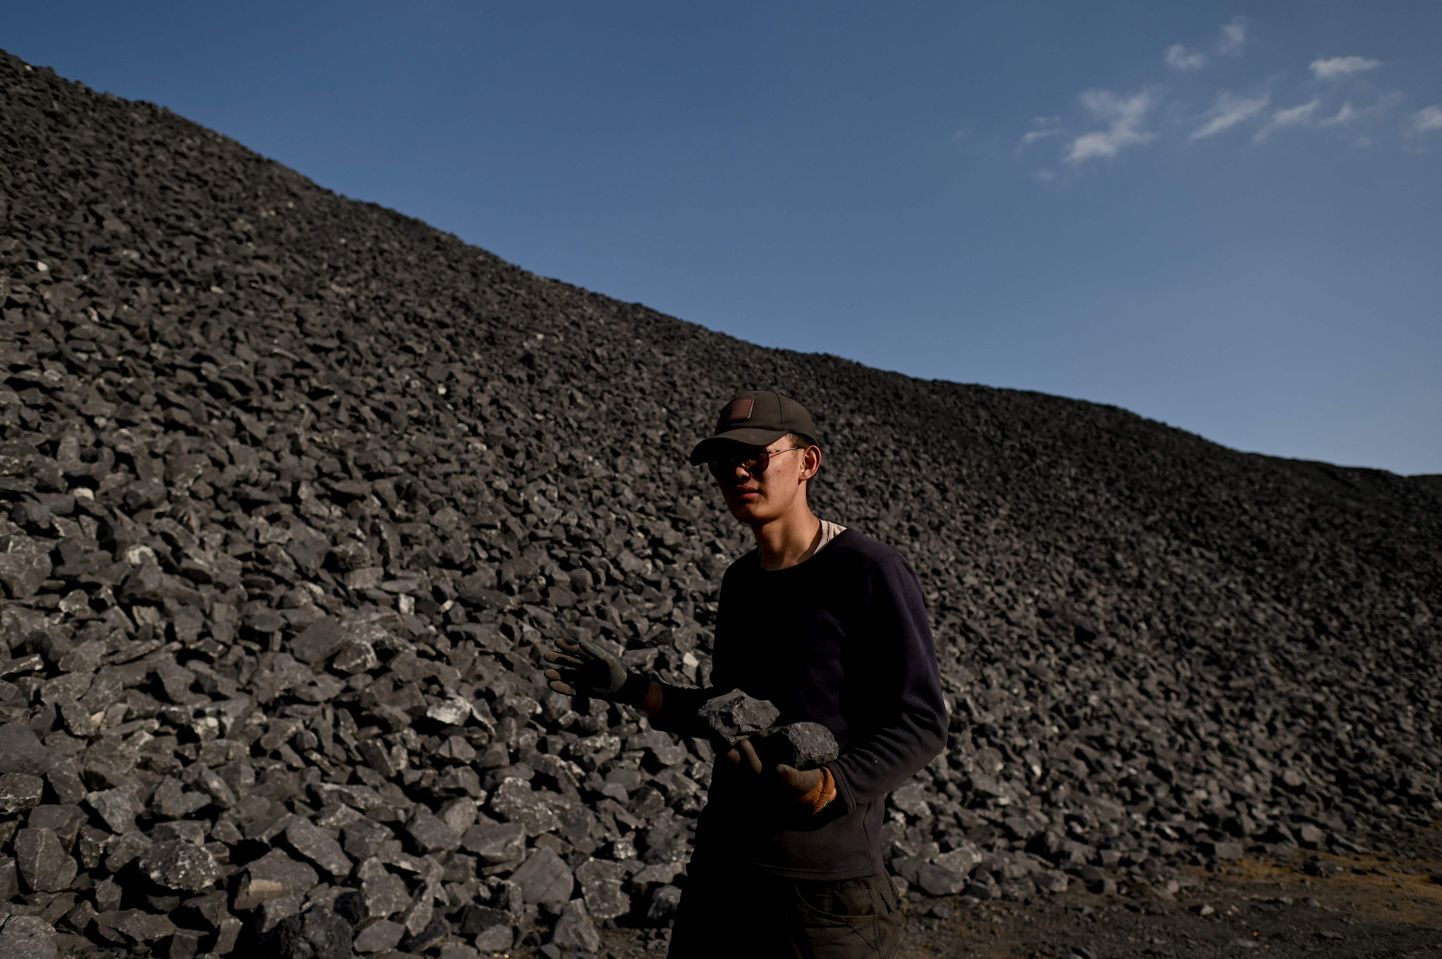 Hiina tööline Shanxi provintsi Datongi kaevanduses sütt sorteerimas.